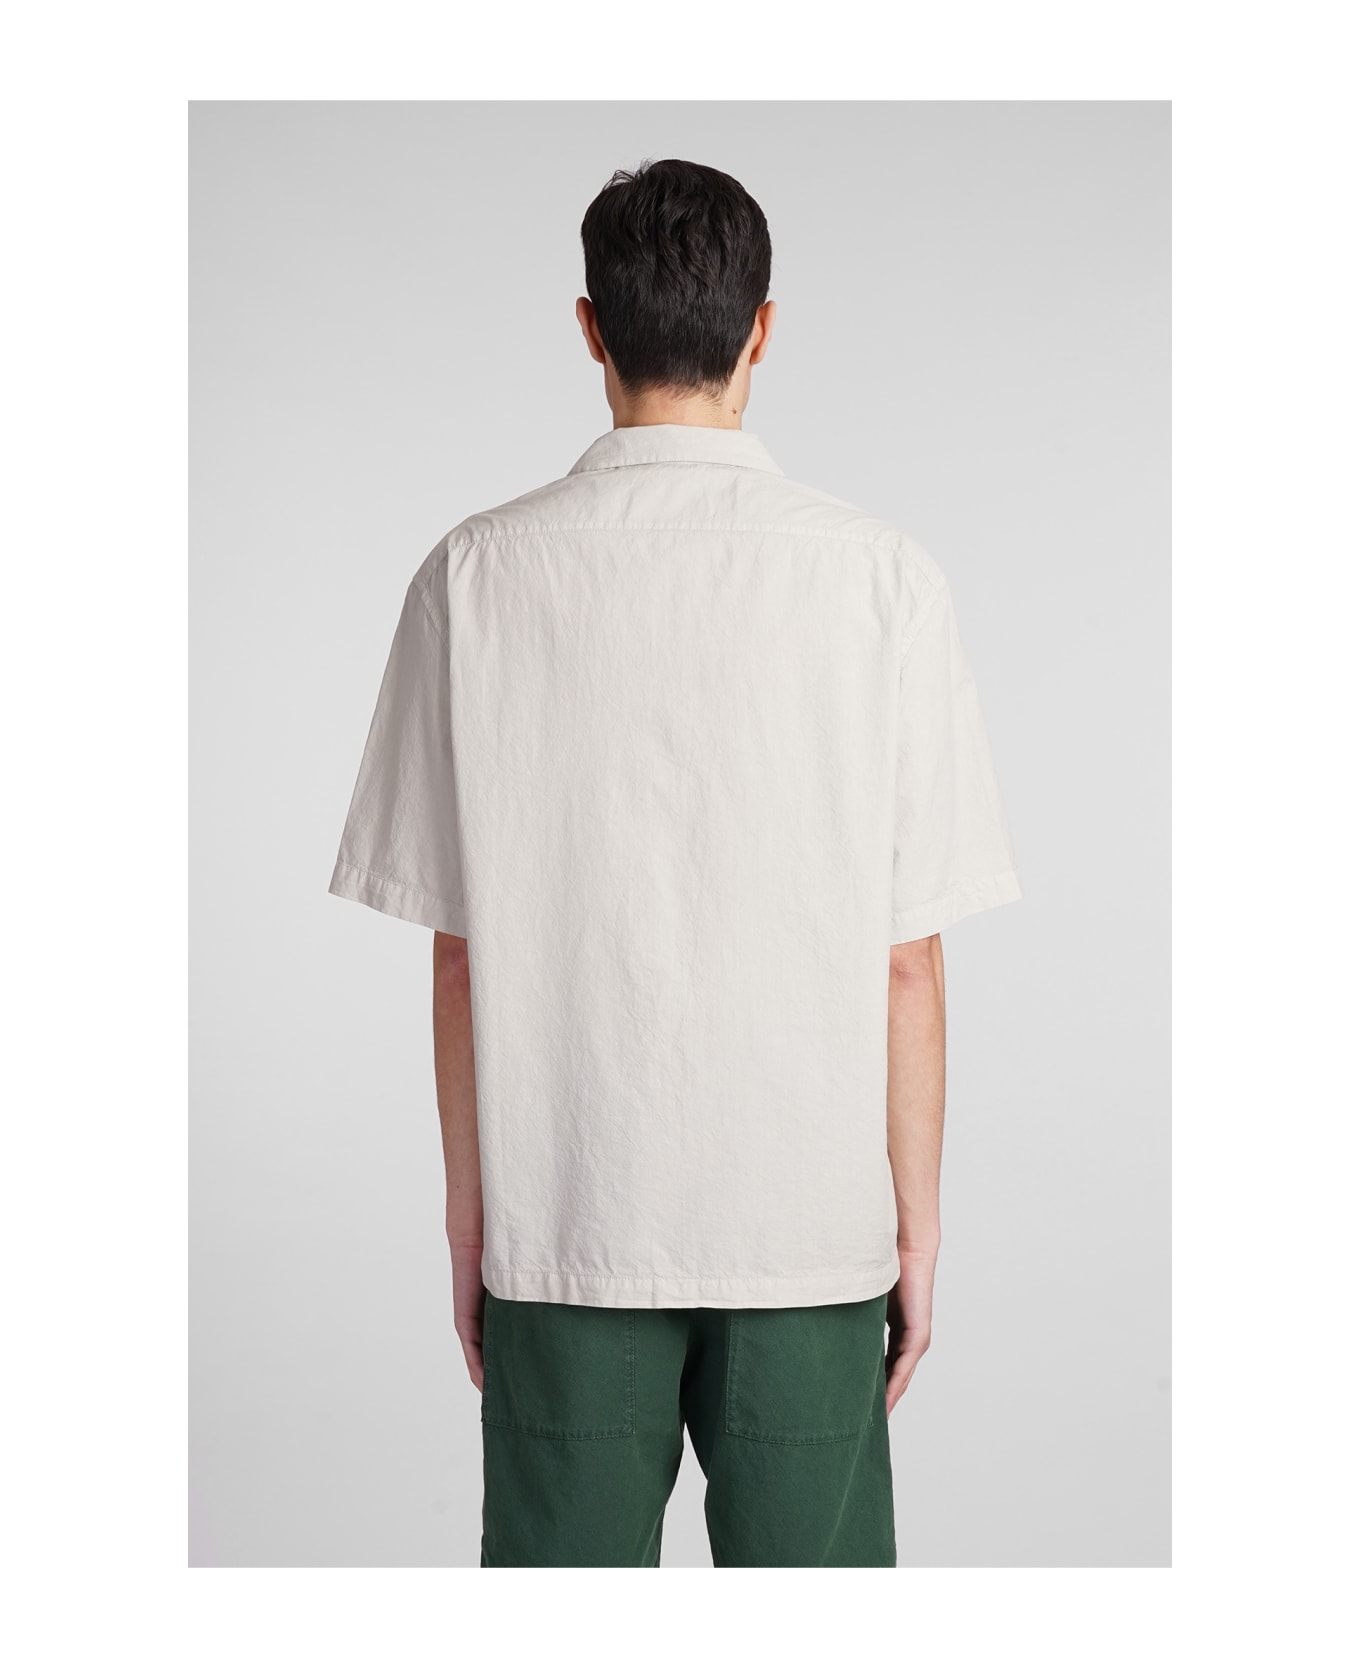 Barena Solana Shirt In Beige Cotton - beige シャツ